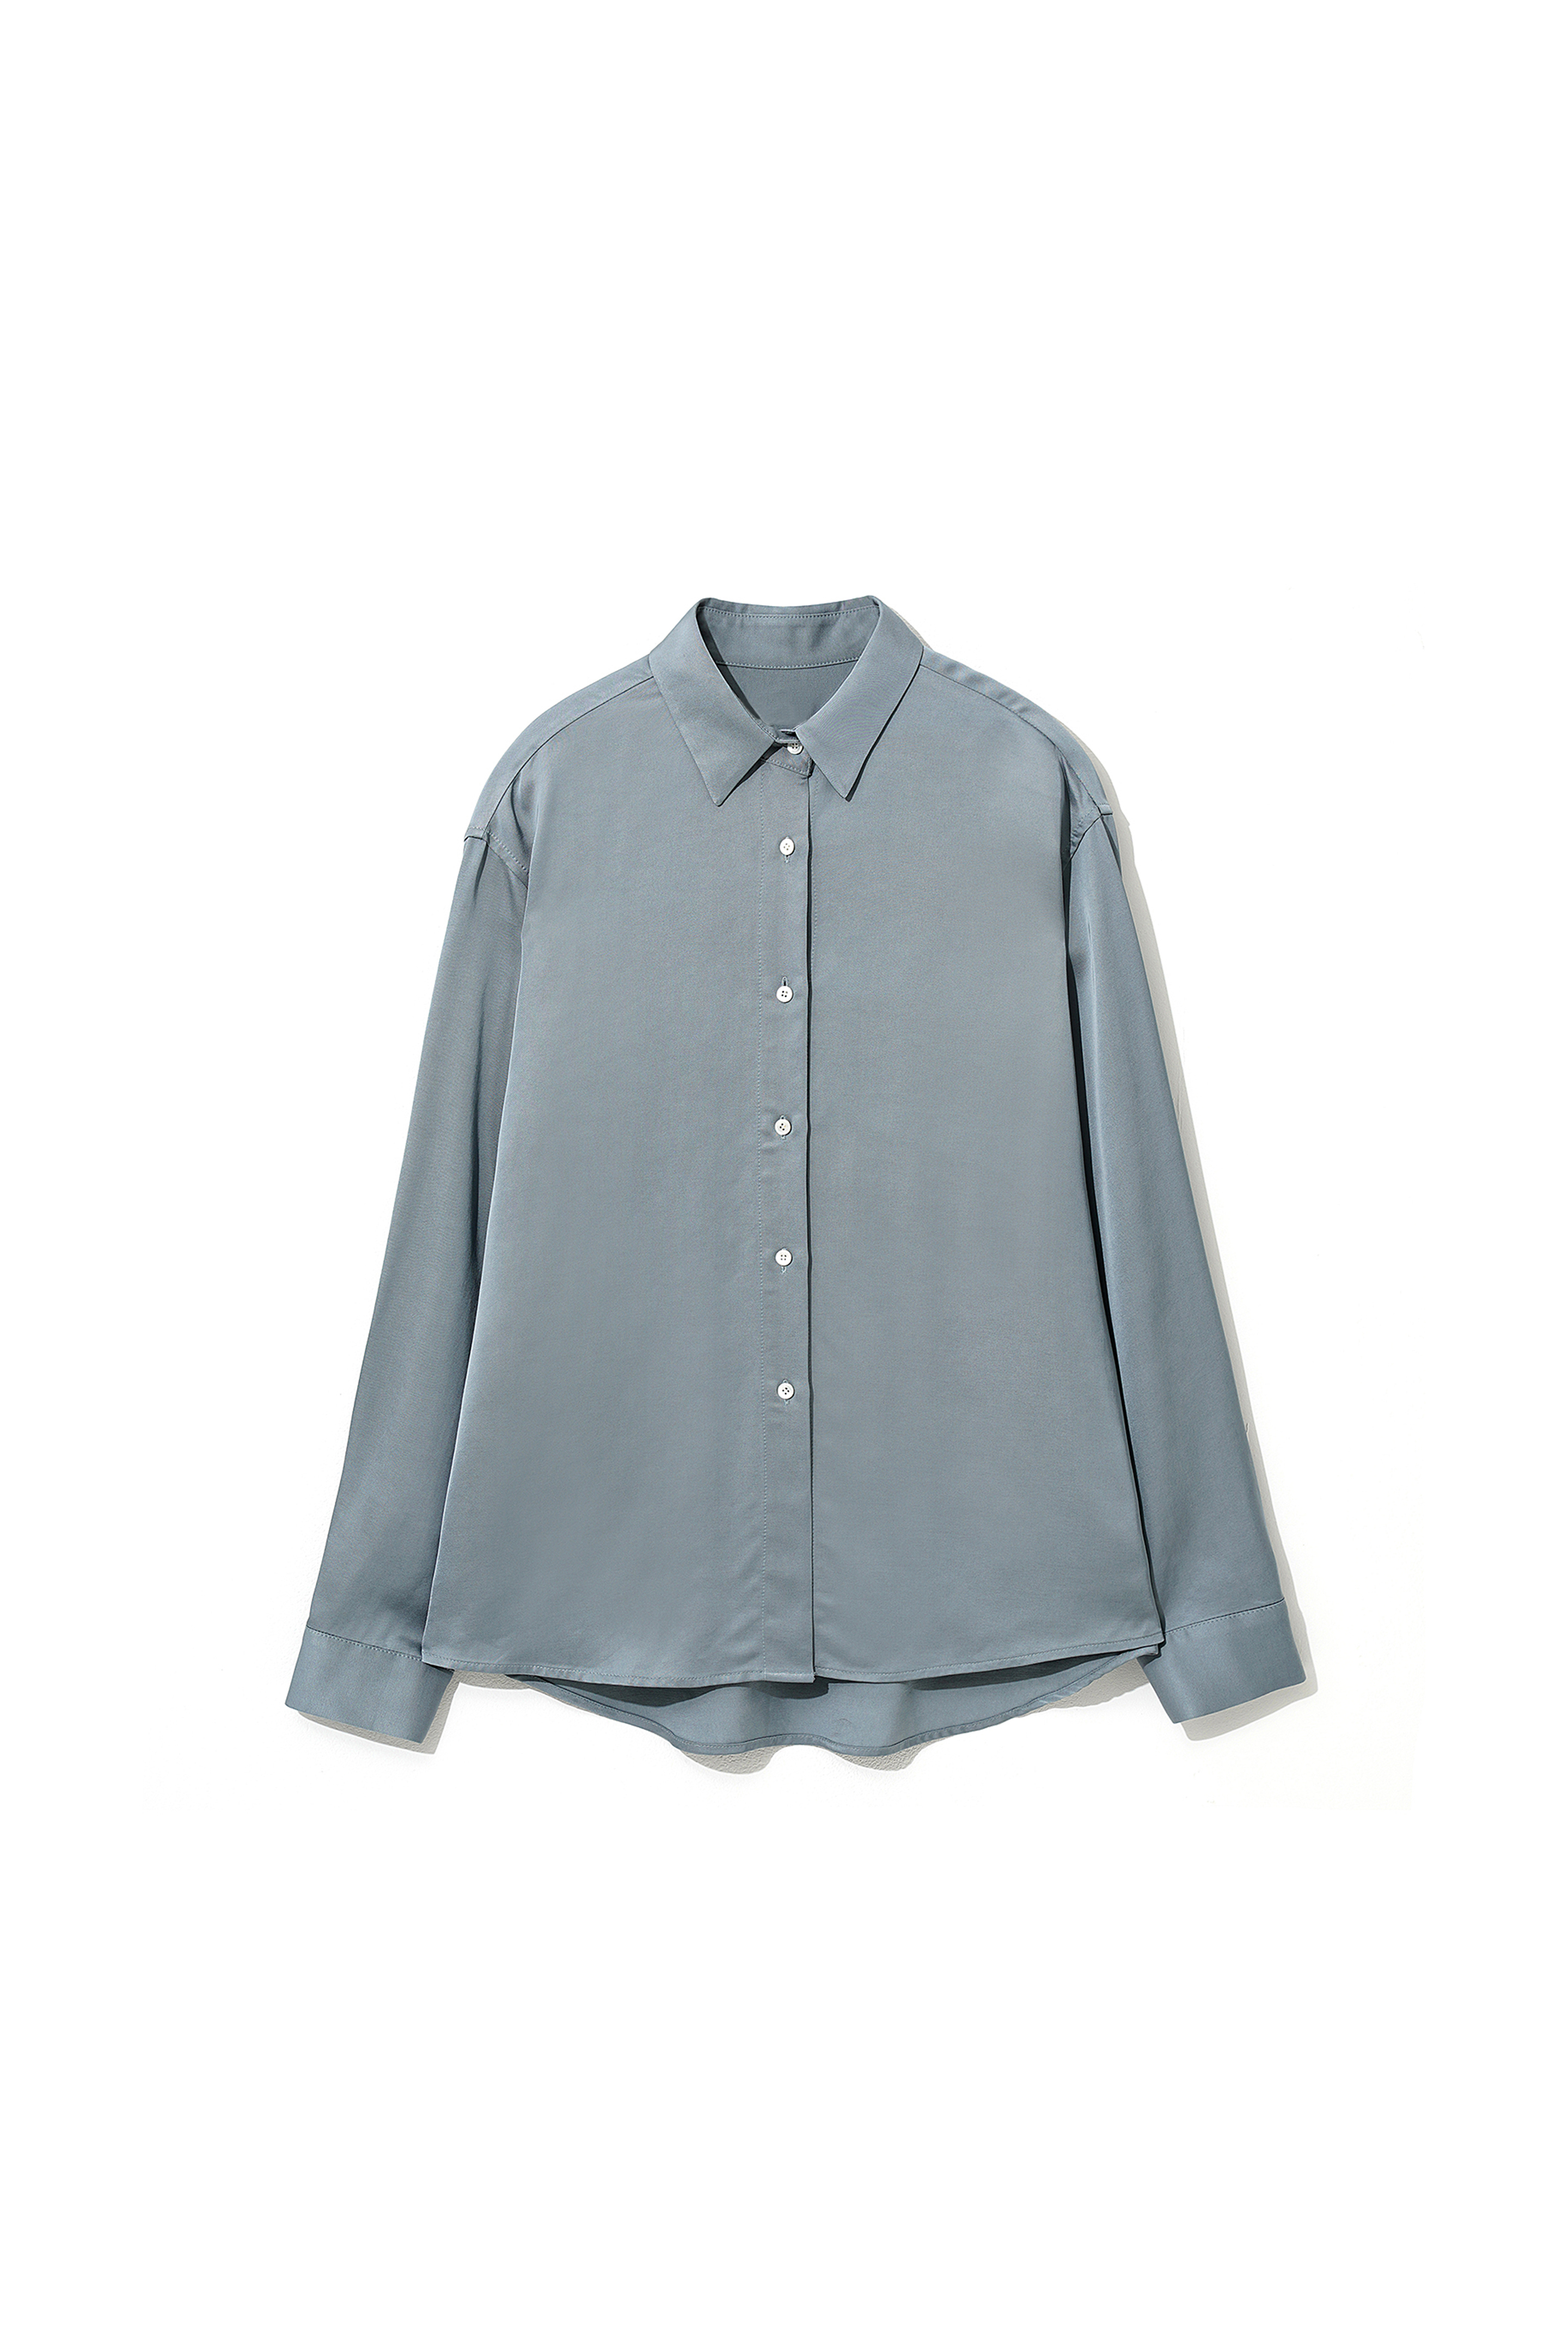 Satin Basic Shirts Blue [03.27(MON) 예약 발송]